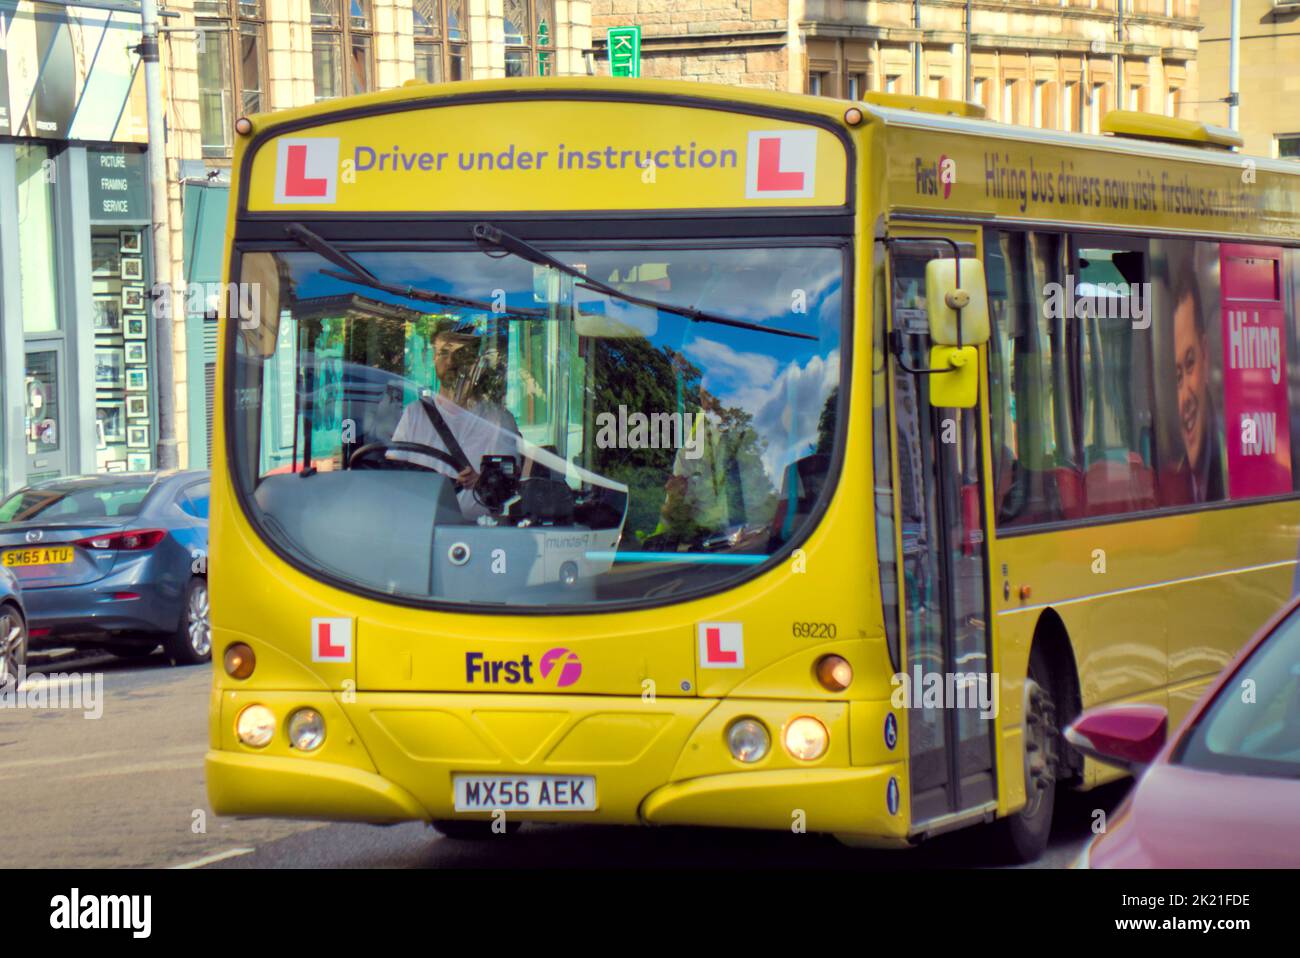 Premier bus Glasgow conducteur d'autobus apprenant Glasgow, Écosse, Royaume-Uni Banque D'Images